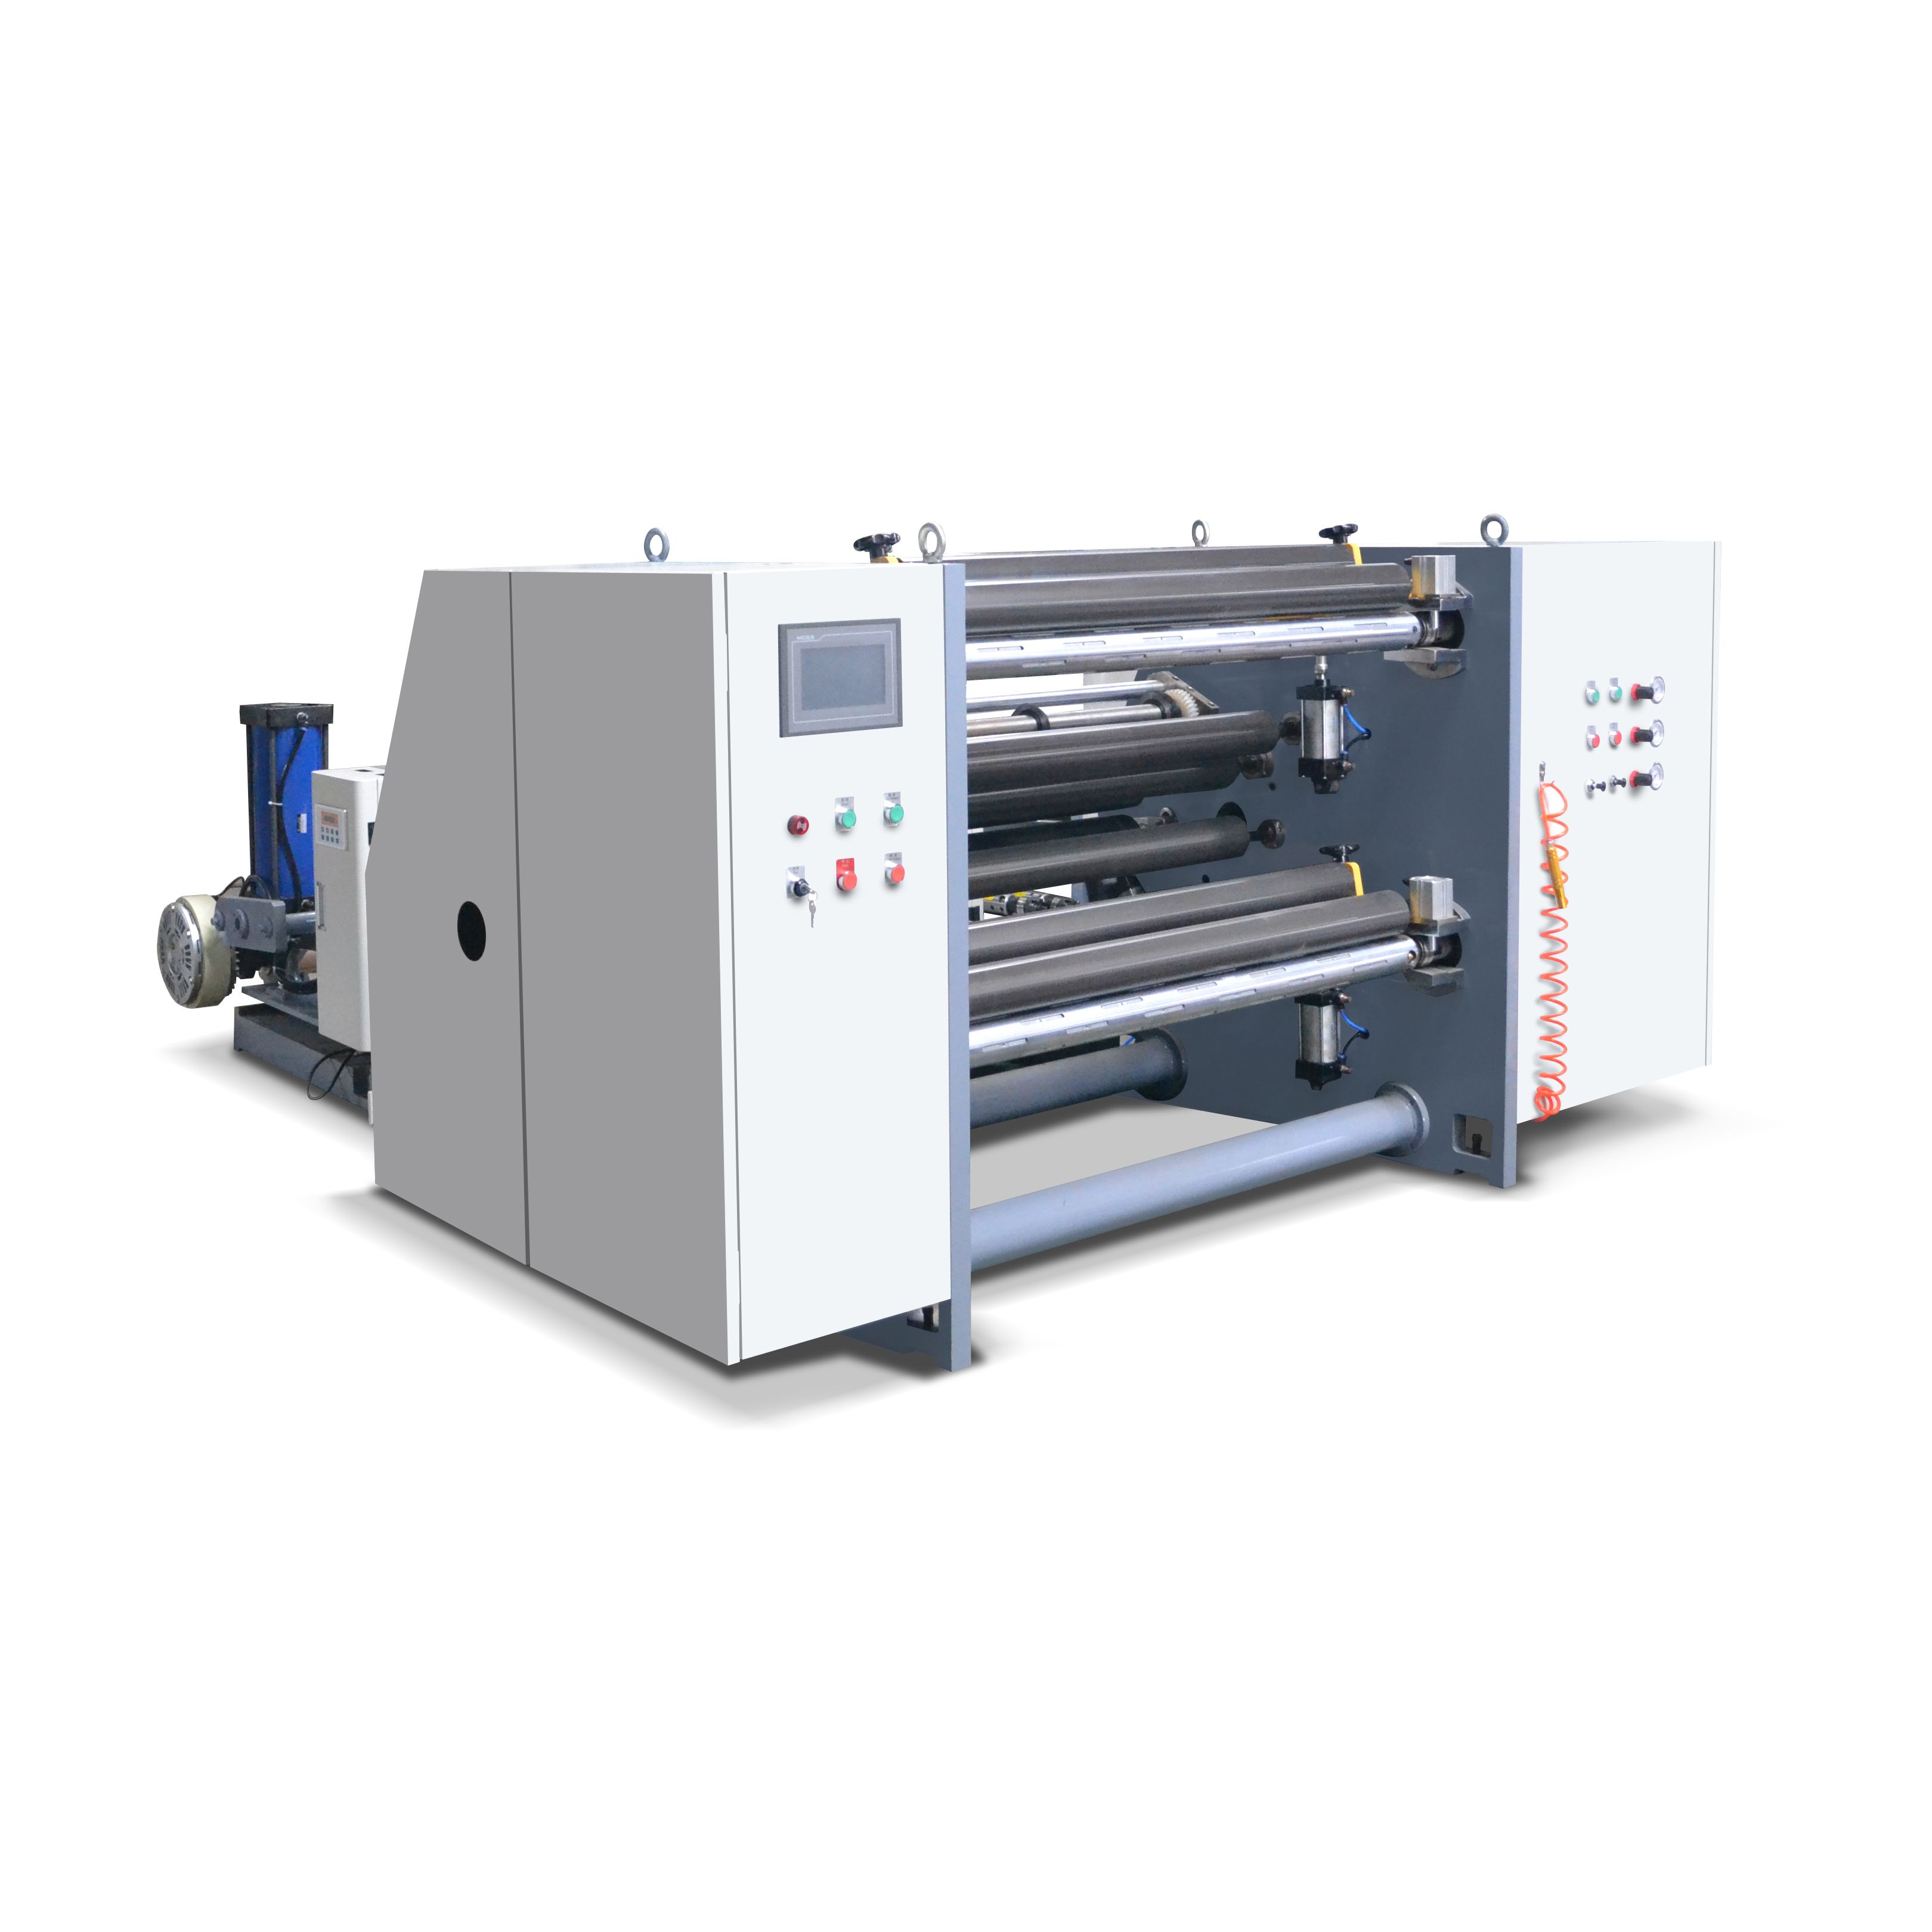 Machine de rembobinage de découpeuse de Film PVC PP, certificat CE, papier de verre, carton adhésif, largeur 1100 